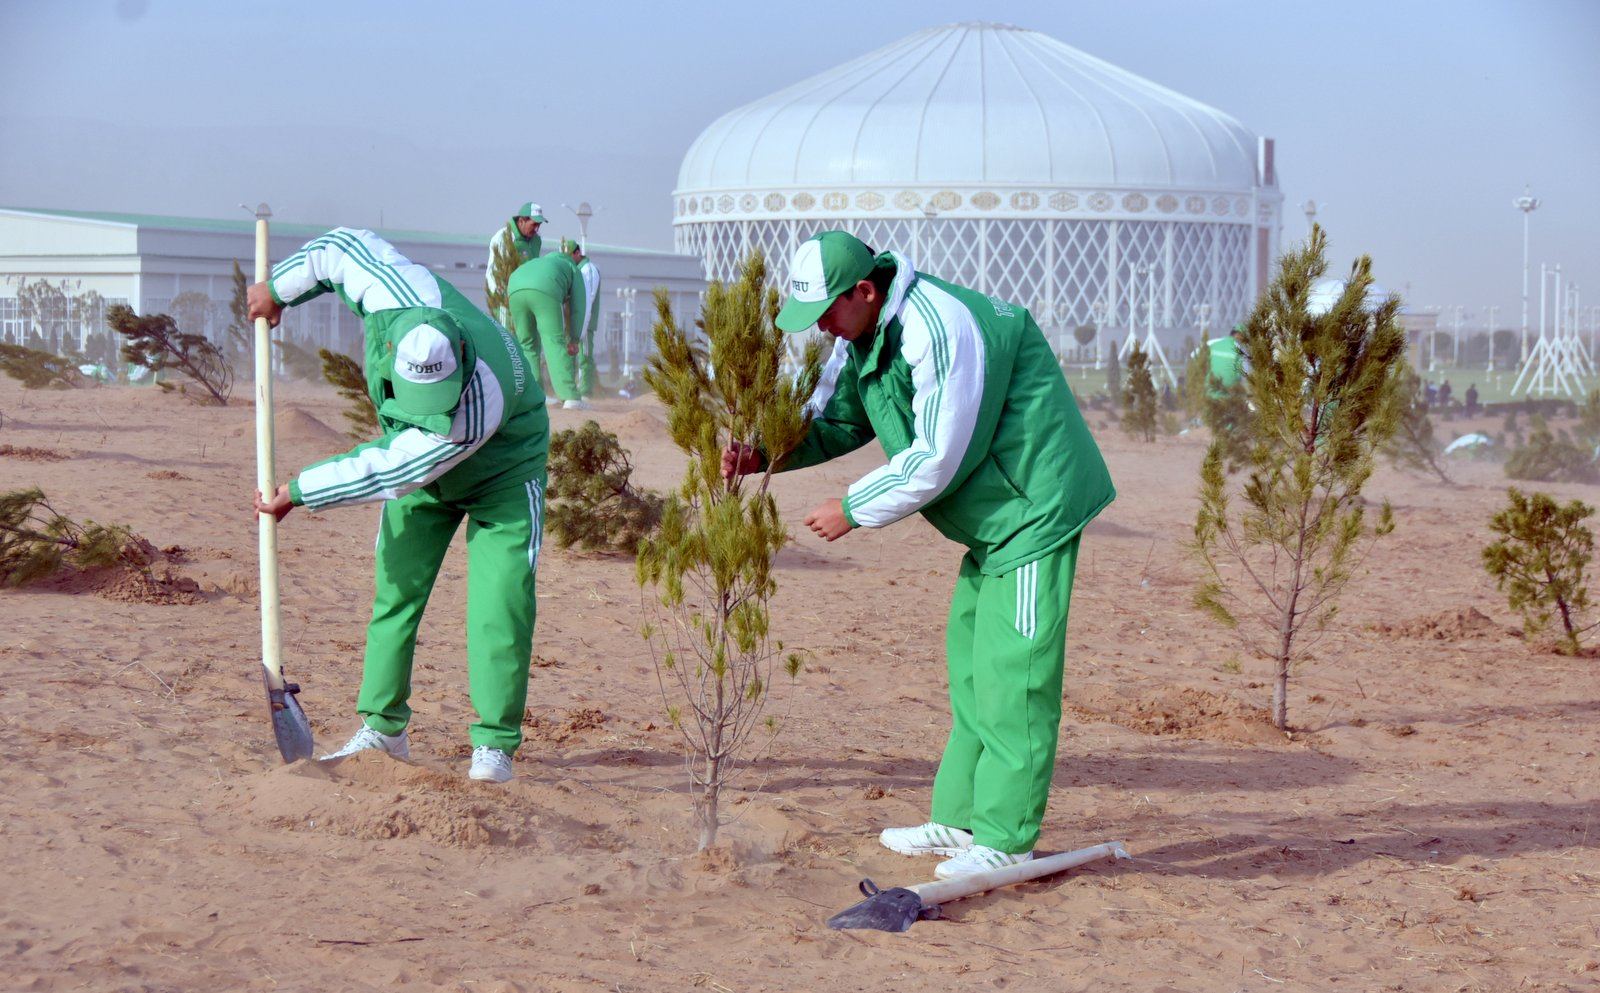 В 2020 году в Туркменистане будут посажены 25 миллионов саженцев деревьев, в честь 25-летия нейтралитета страны (ФОТО)